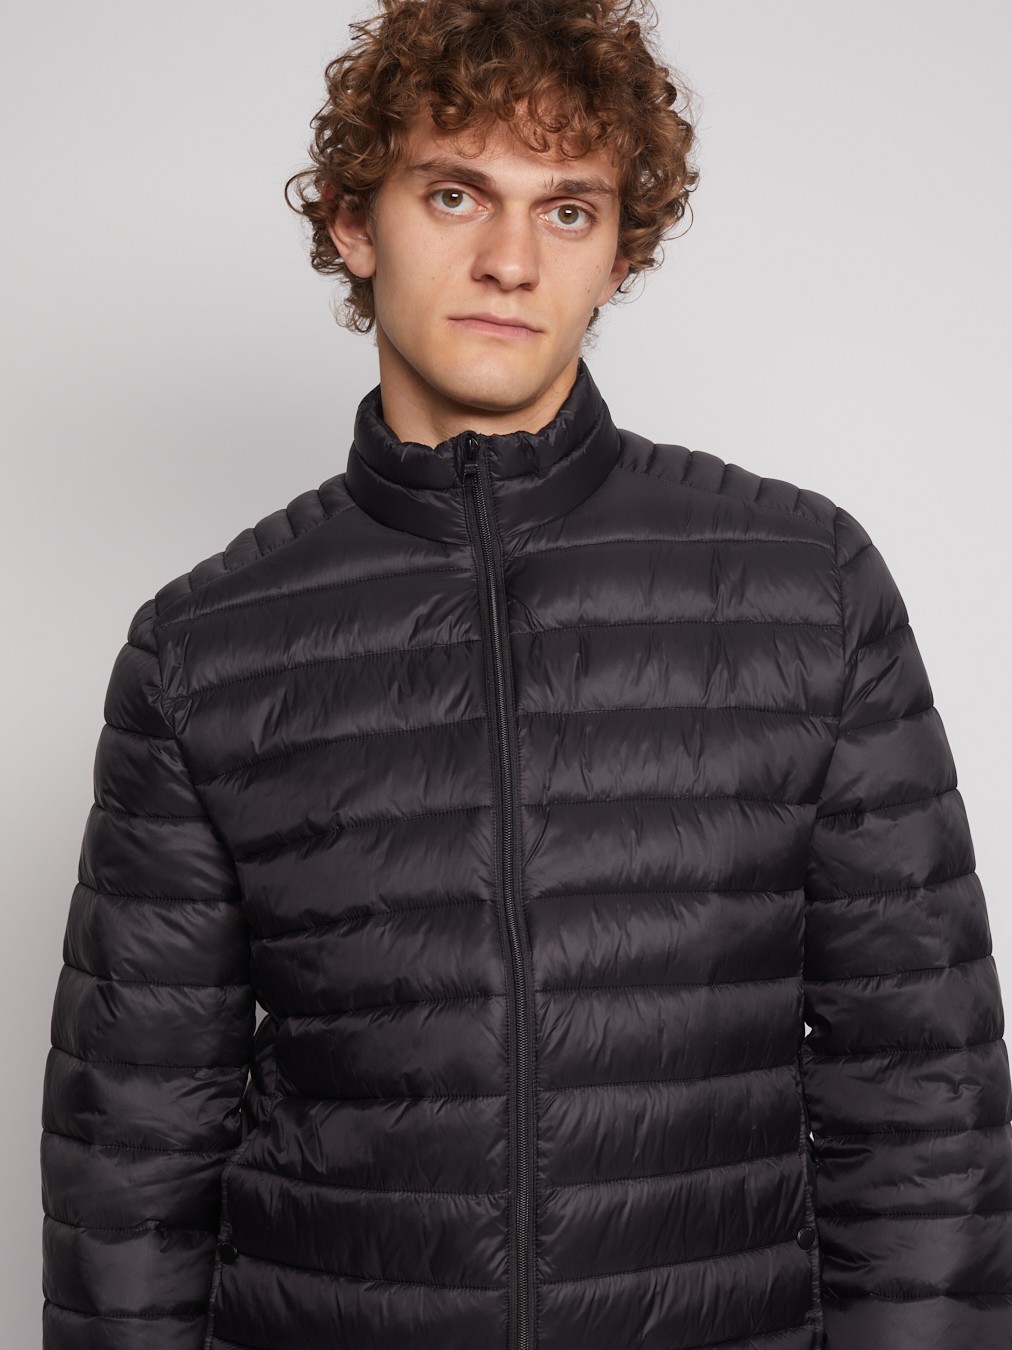 Лёгкая куртка с воротником-стойкой zolla 012335102034, цвет черный, размер S - фото 5